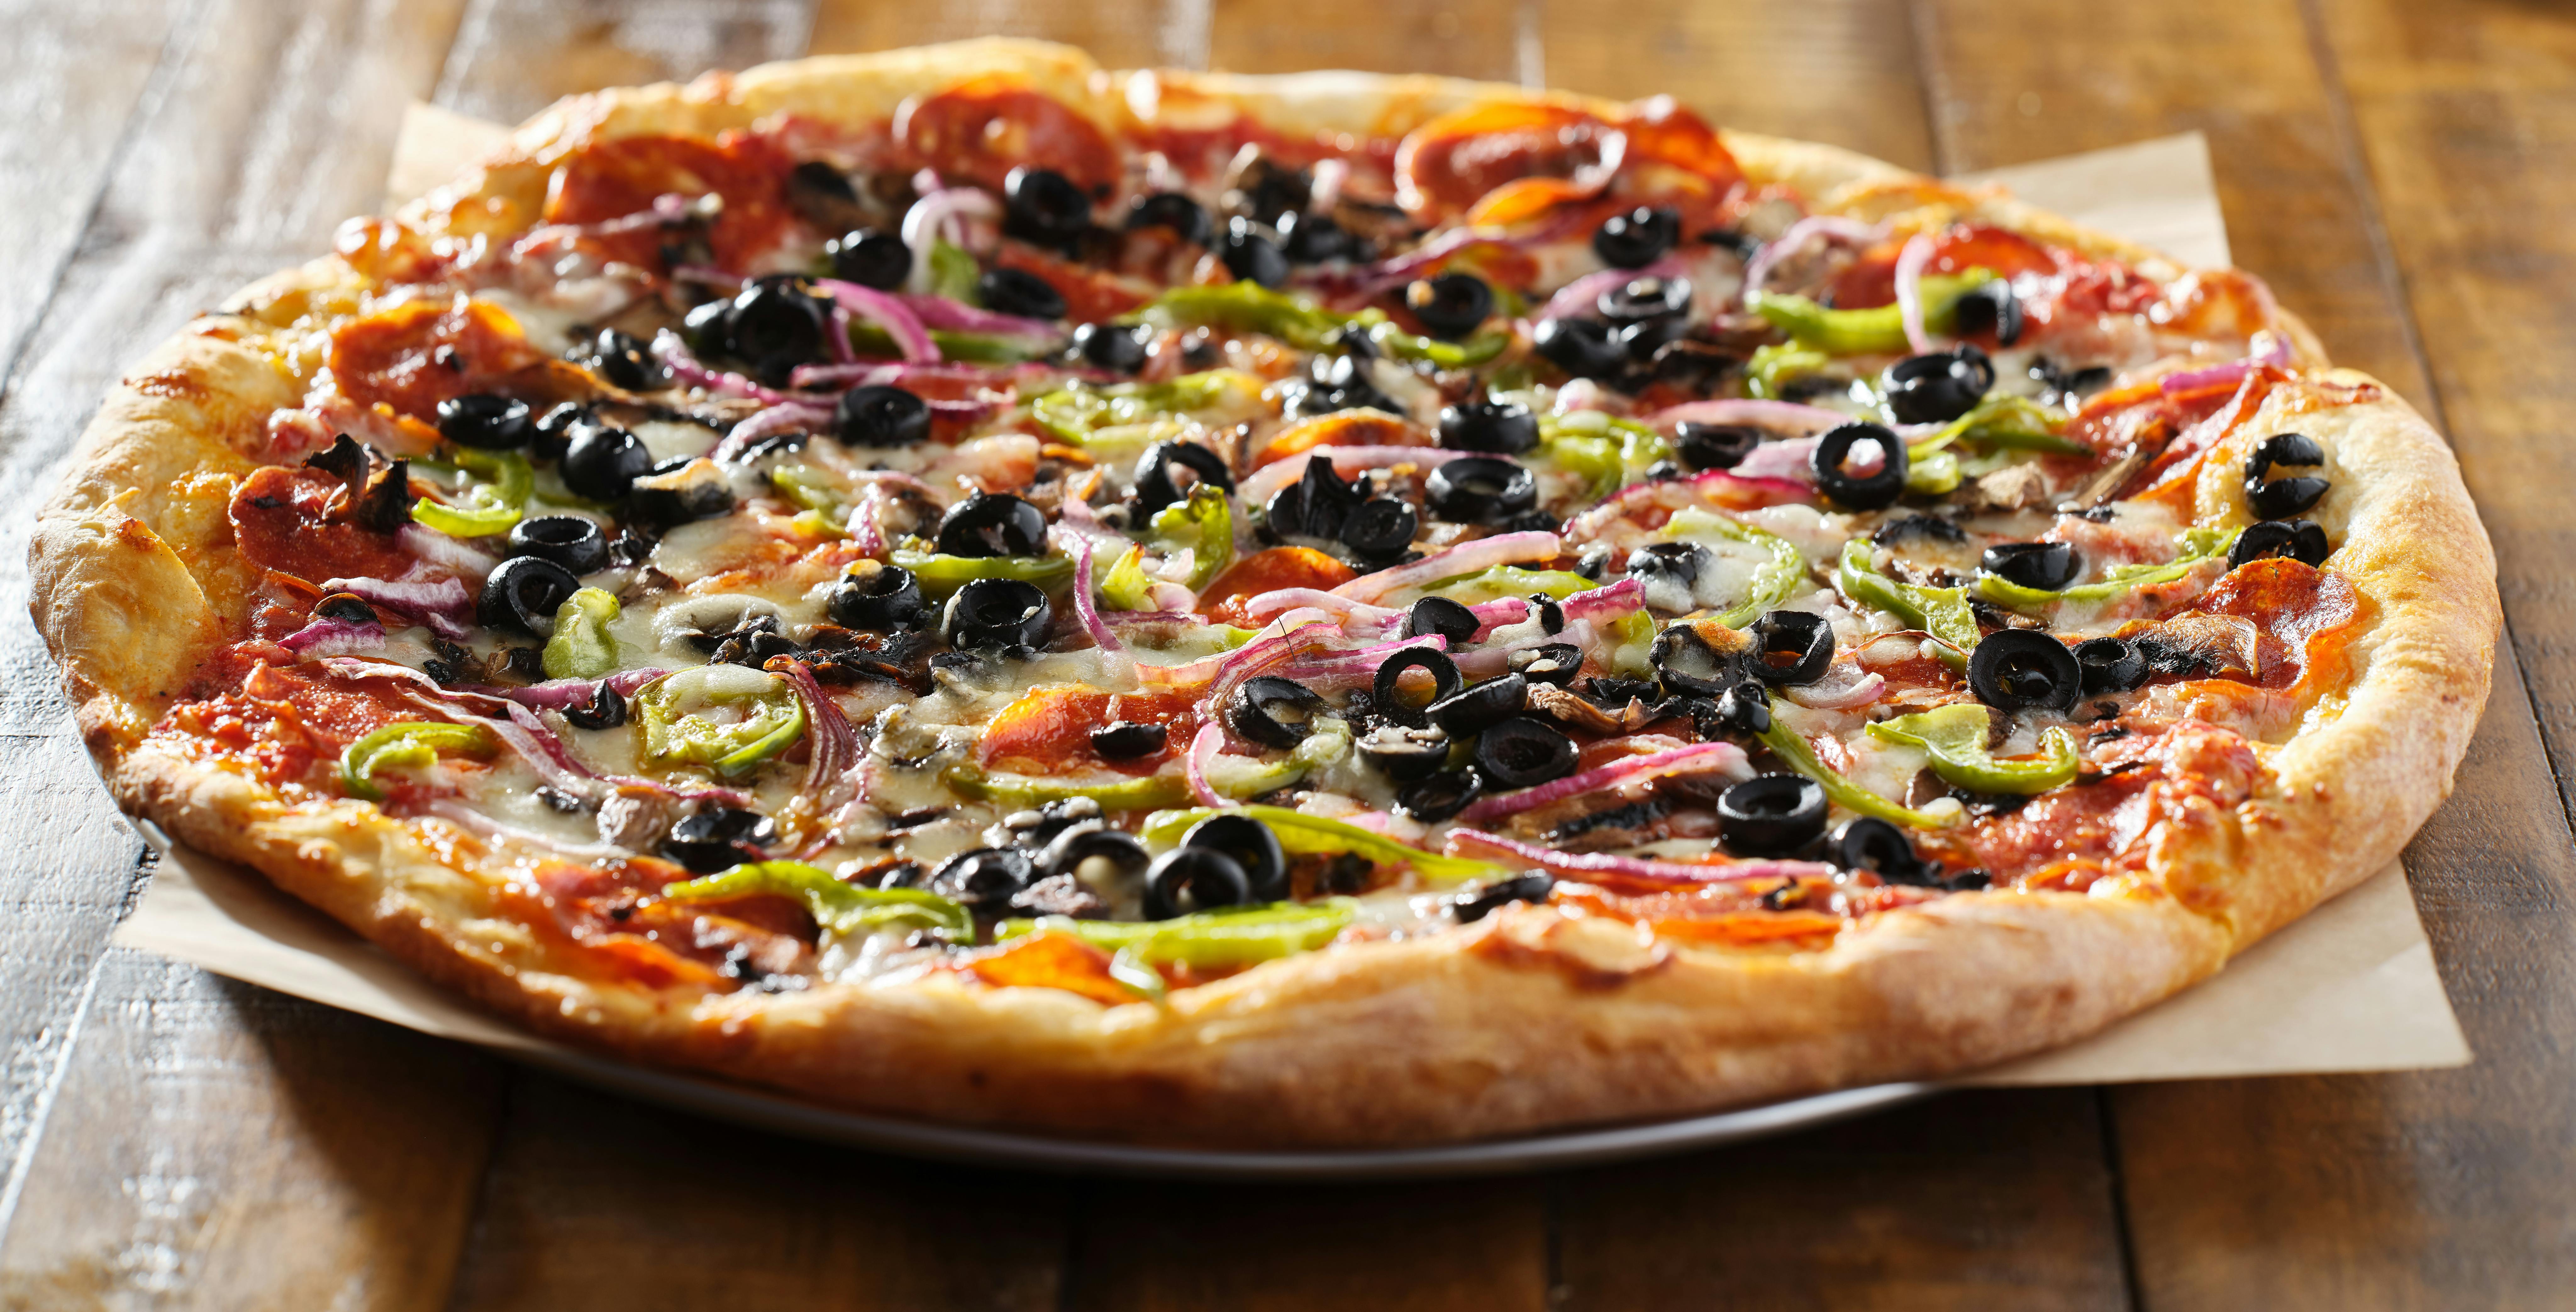 Caprissi Pizza & Pasta in Dallas - Highlight